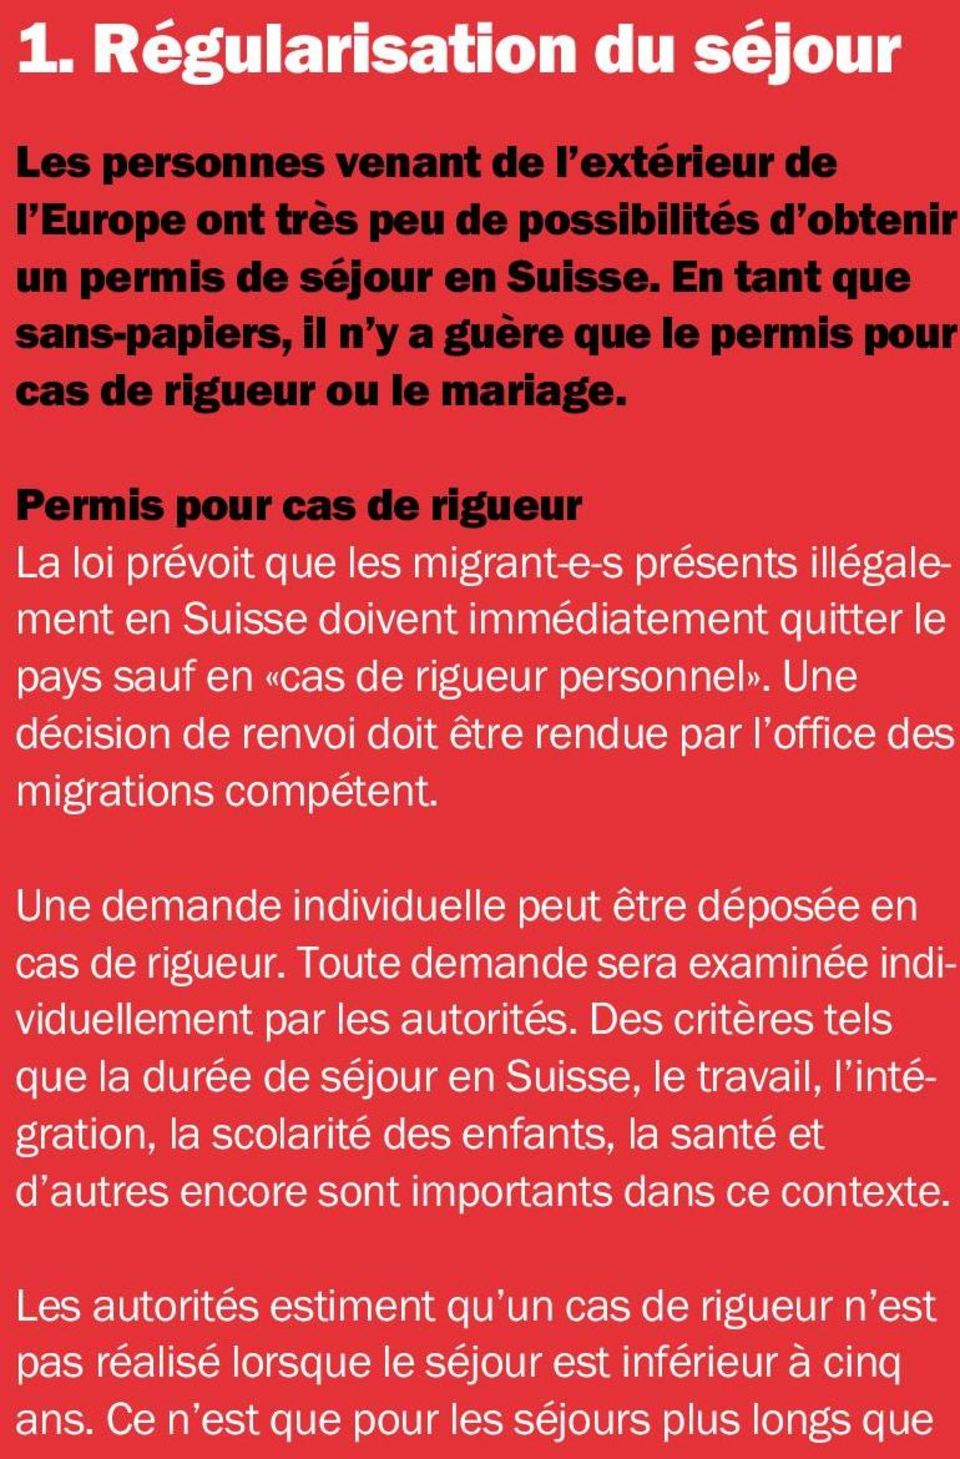 Permis pour cas de rigueur La loi prévoit que les migrant-e-s présents illégalement en Suisse doivent immédiatement quitter le pays sauf en «cas de rigueur personnel».